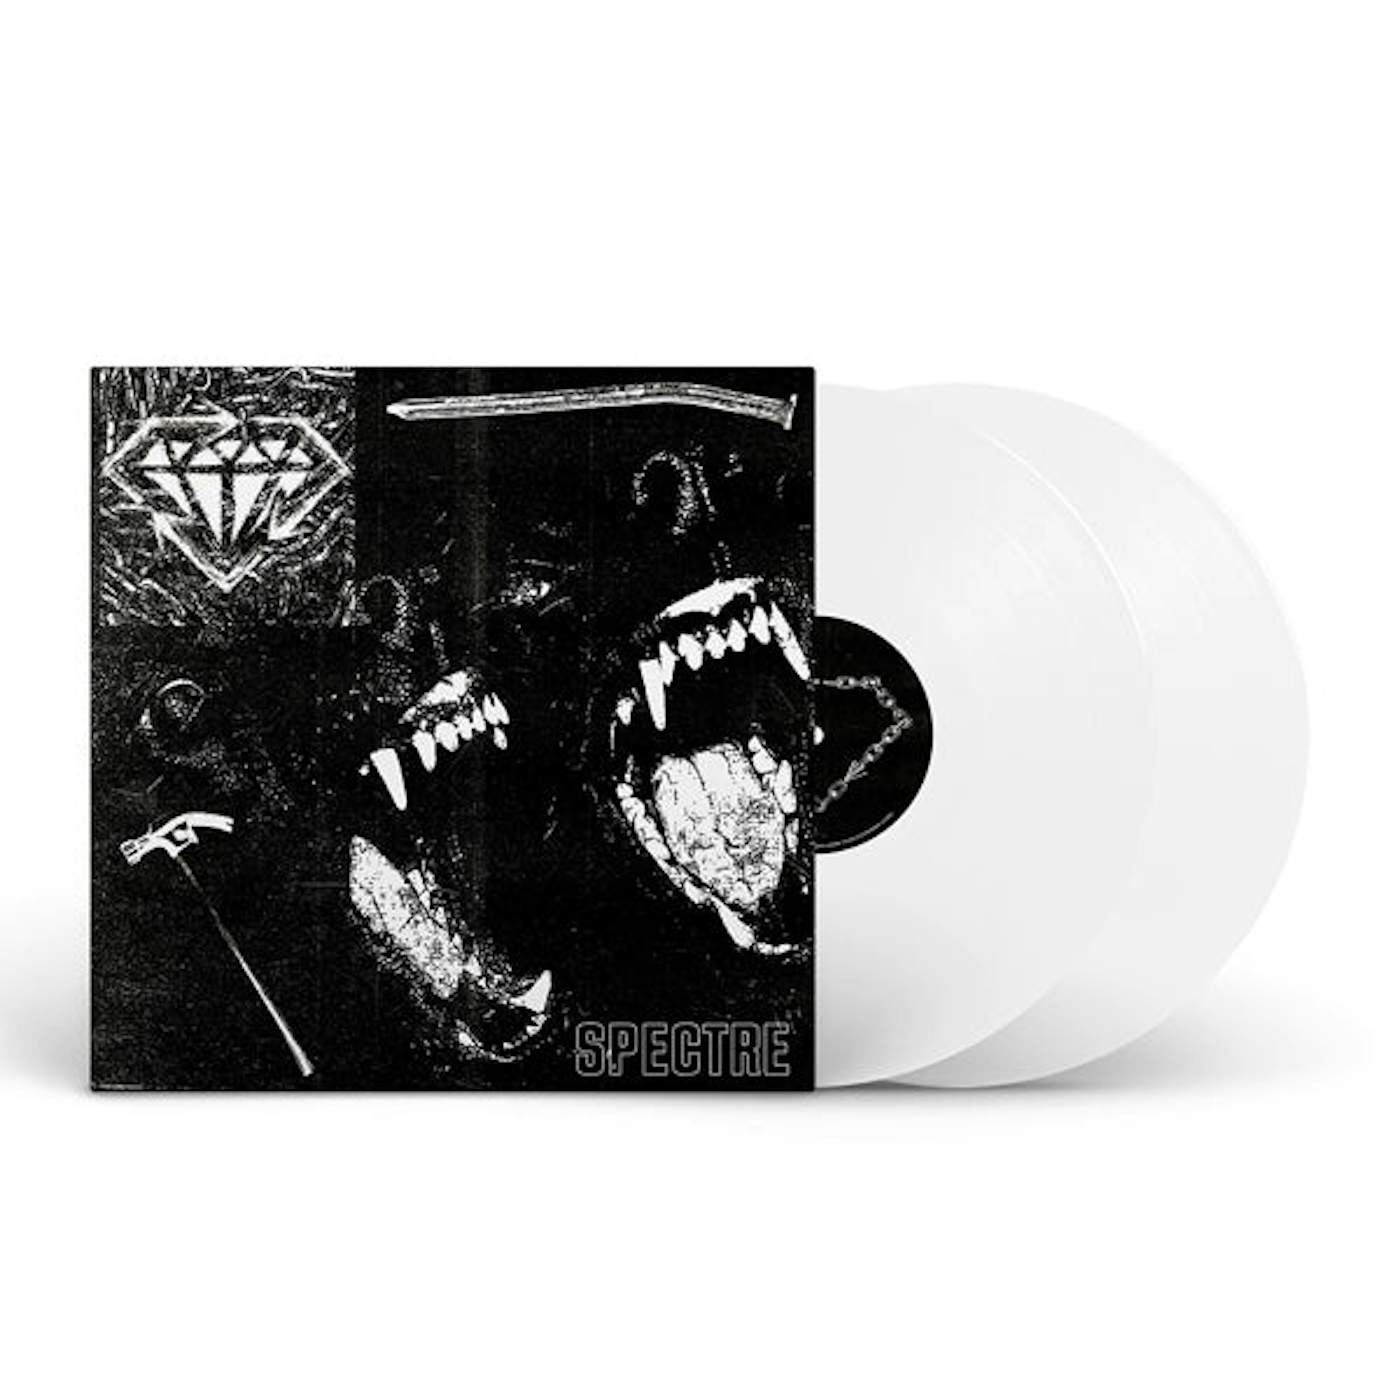 Stick To Your Guns LP - Spectre (2lp White Vinyl)